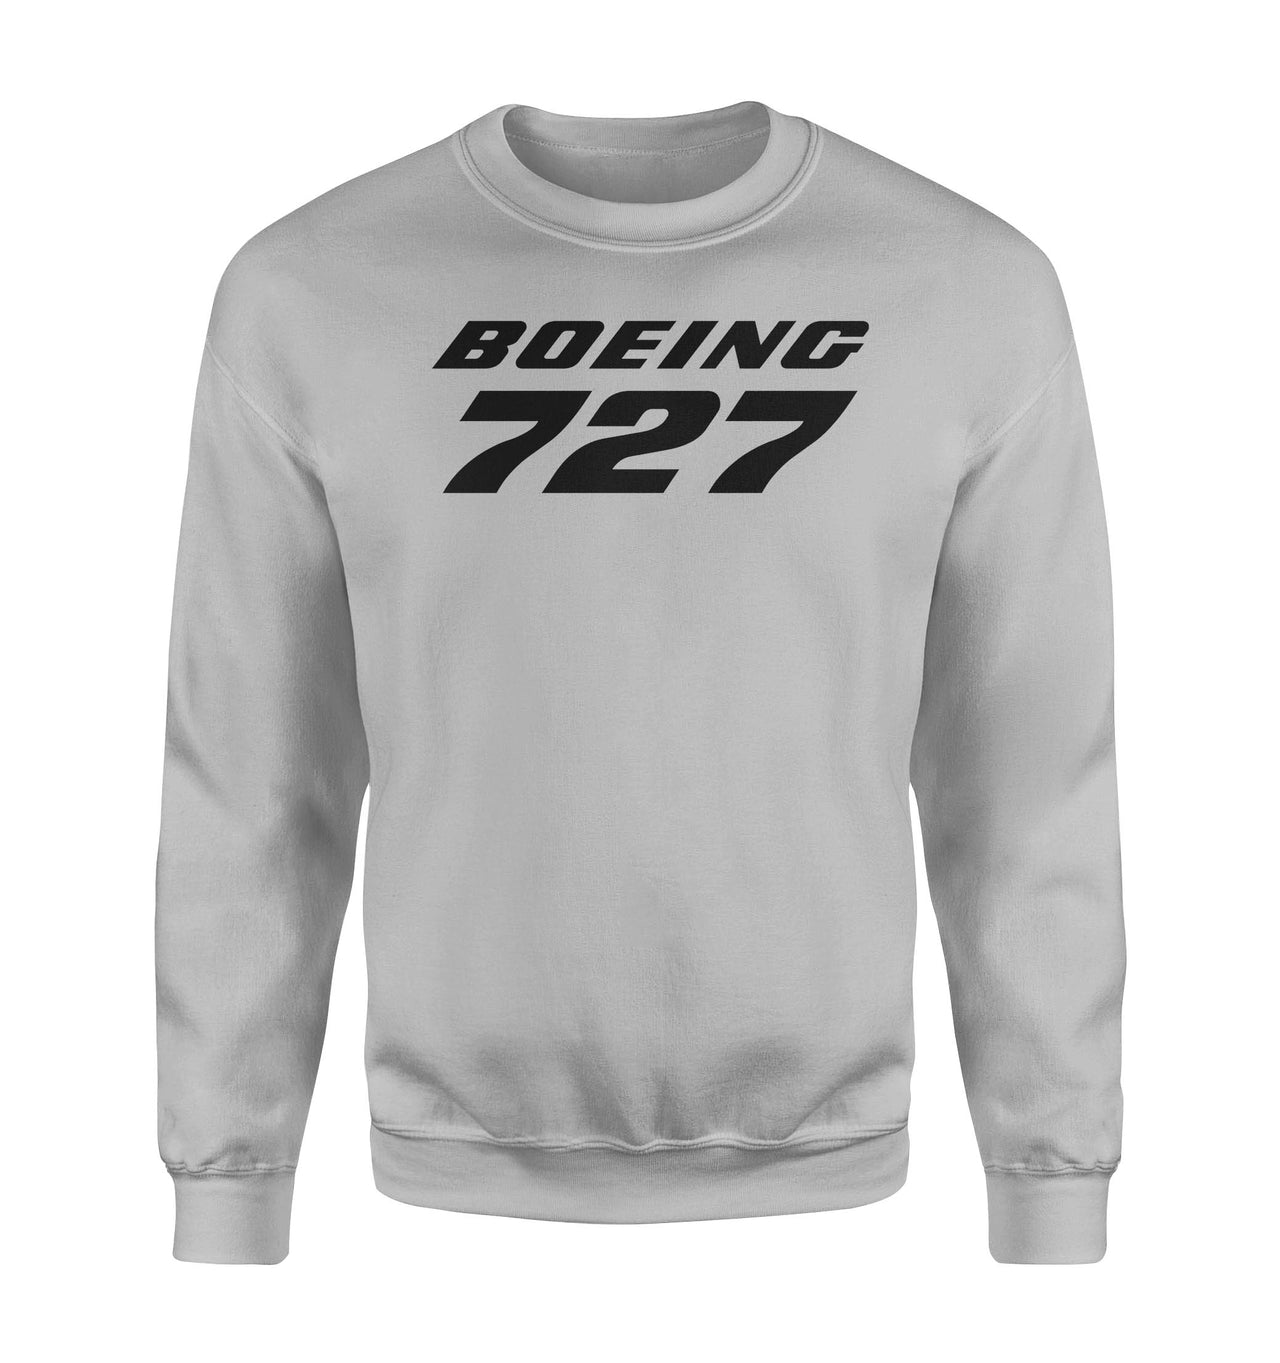 Boeing 727 & Text Designed Sweatshirts